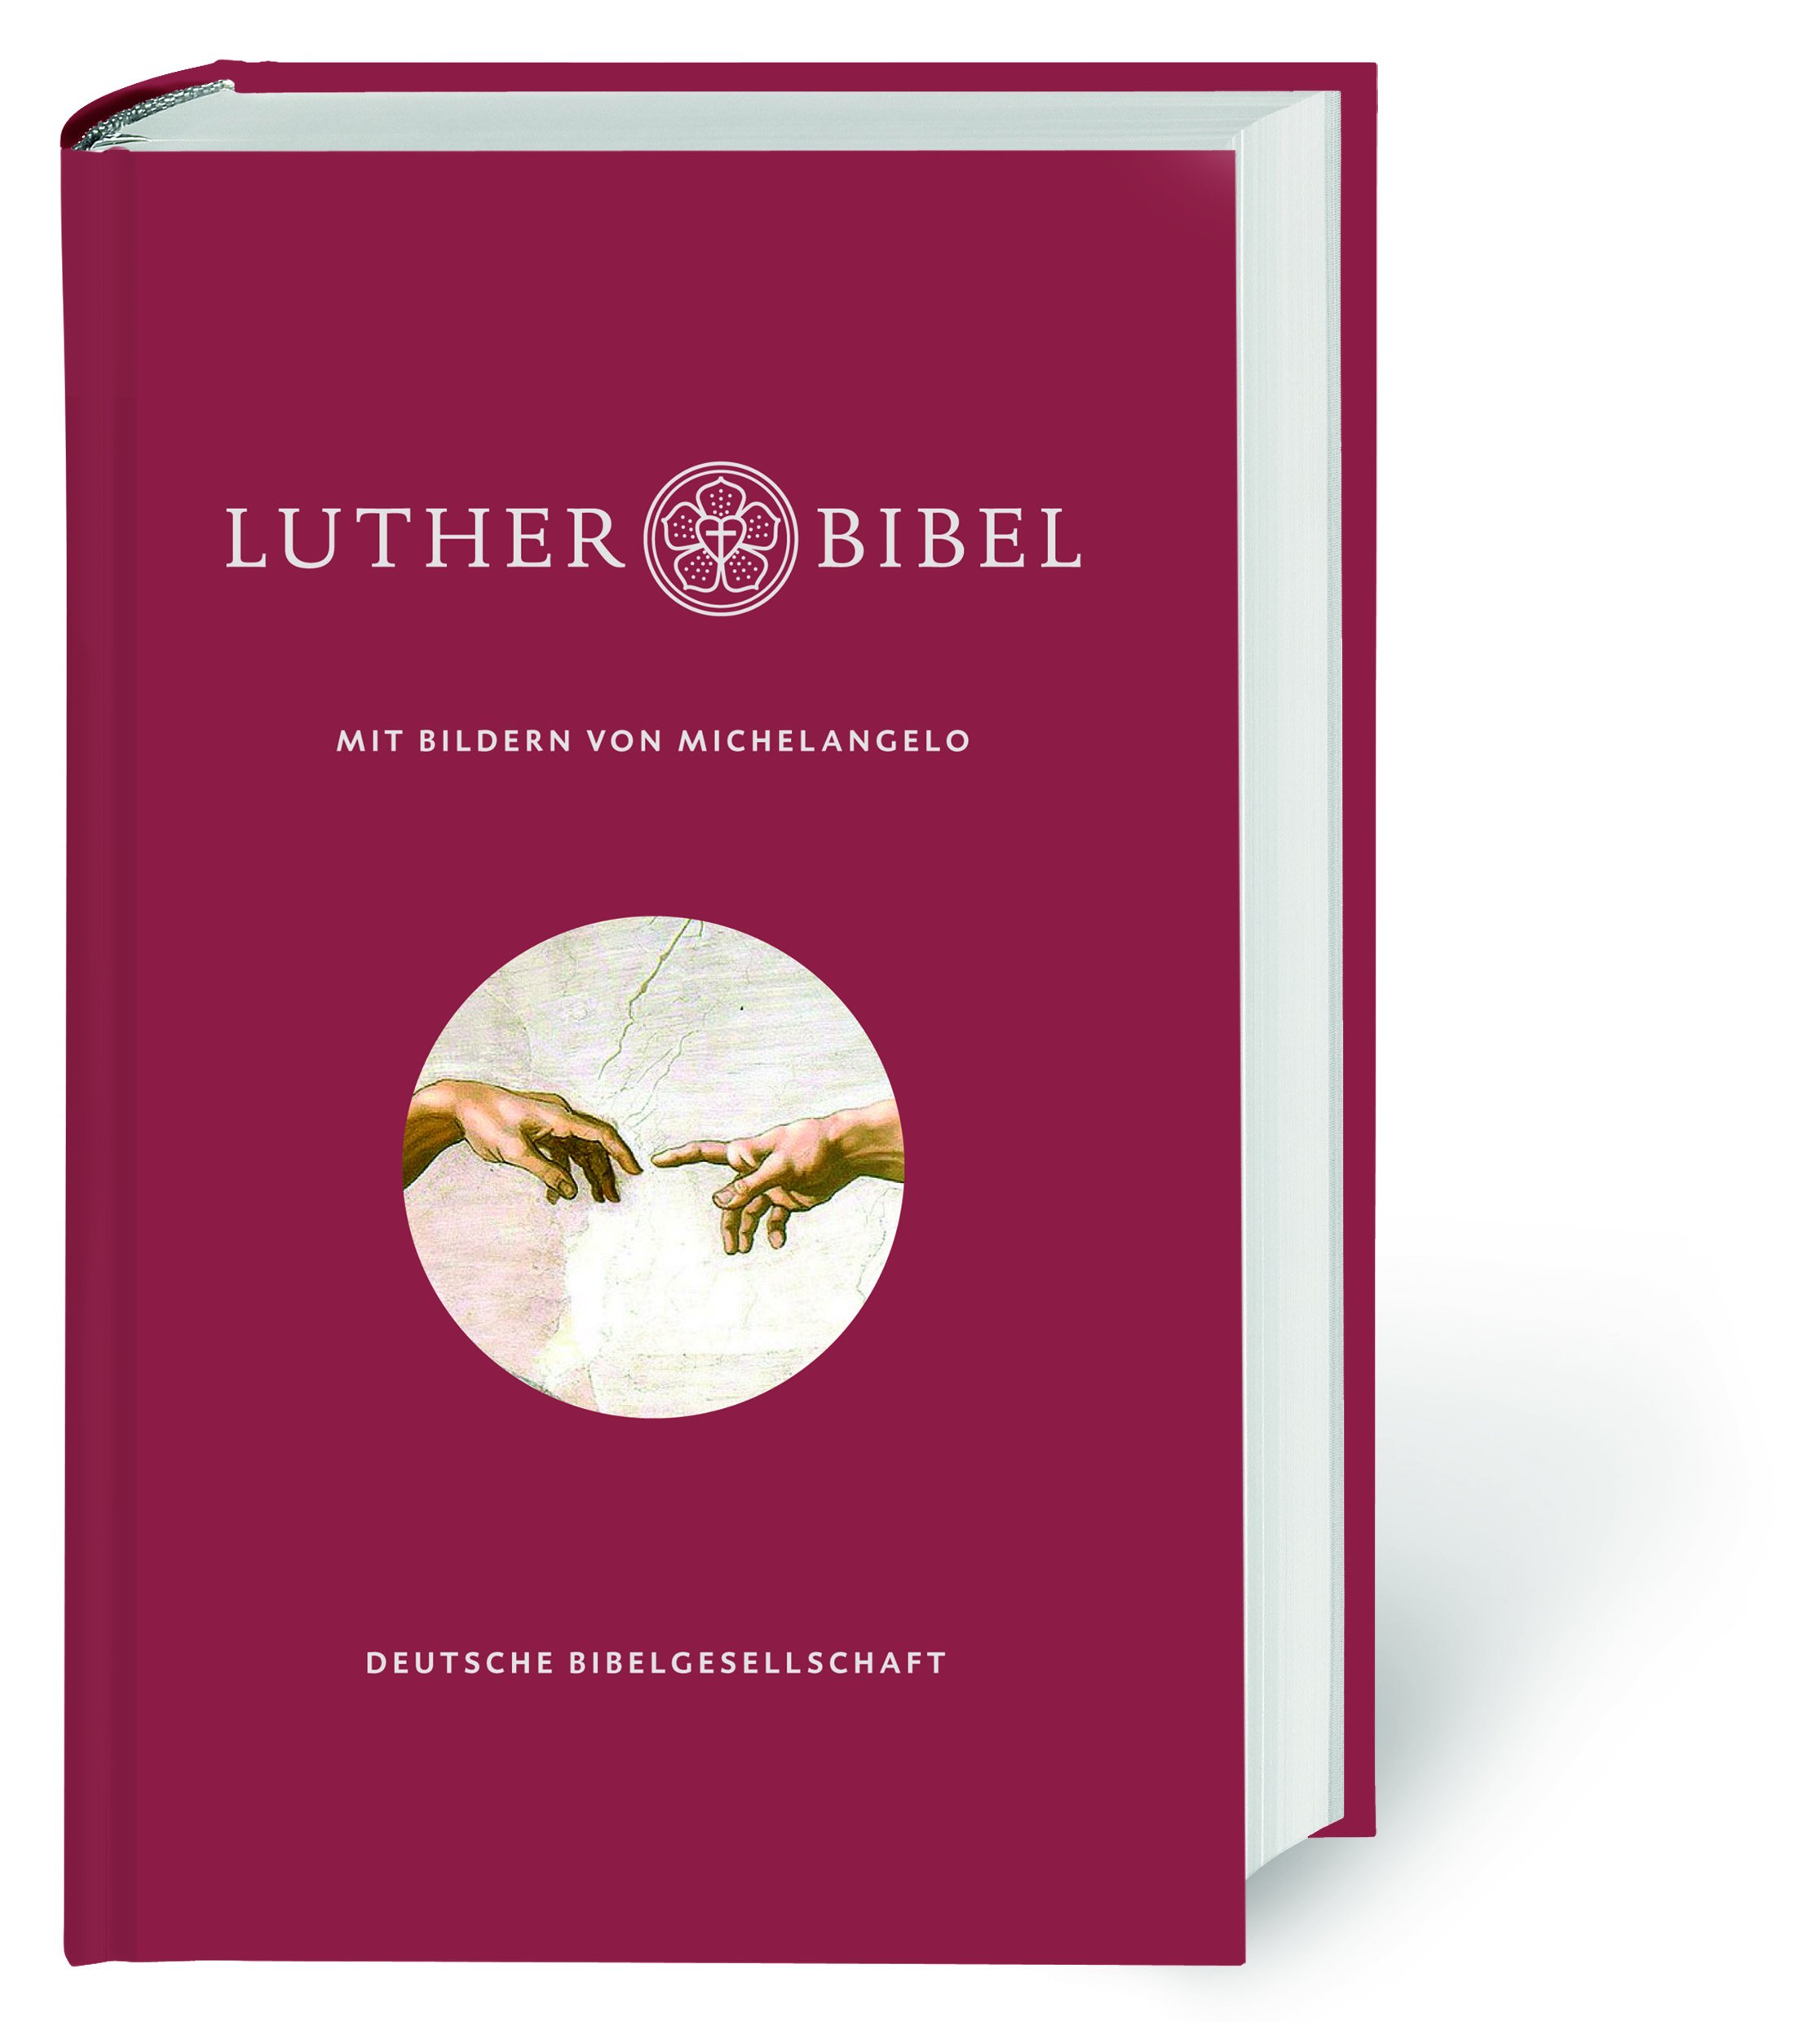 Lutherbibel mit Bildern von Michelangelo - Cover